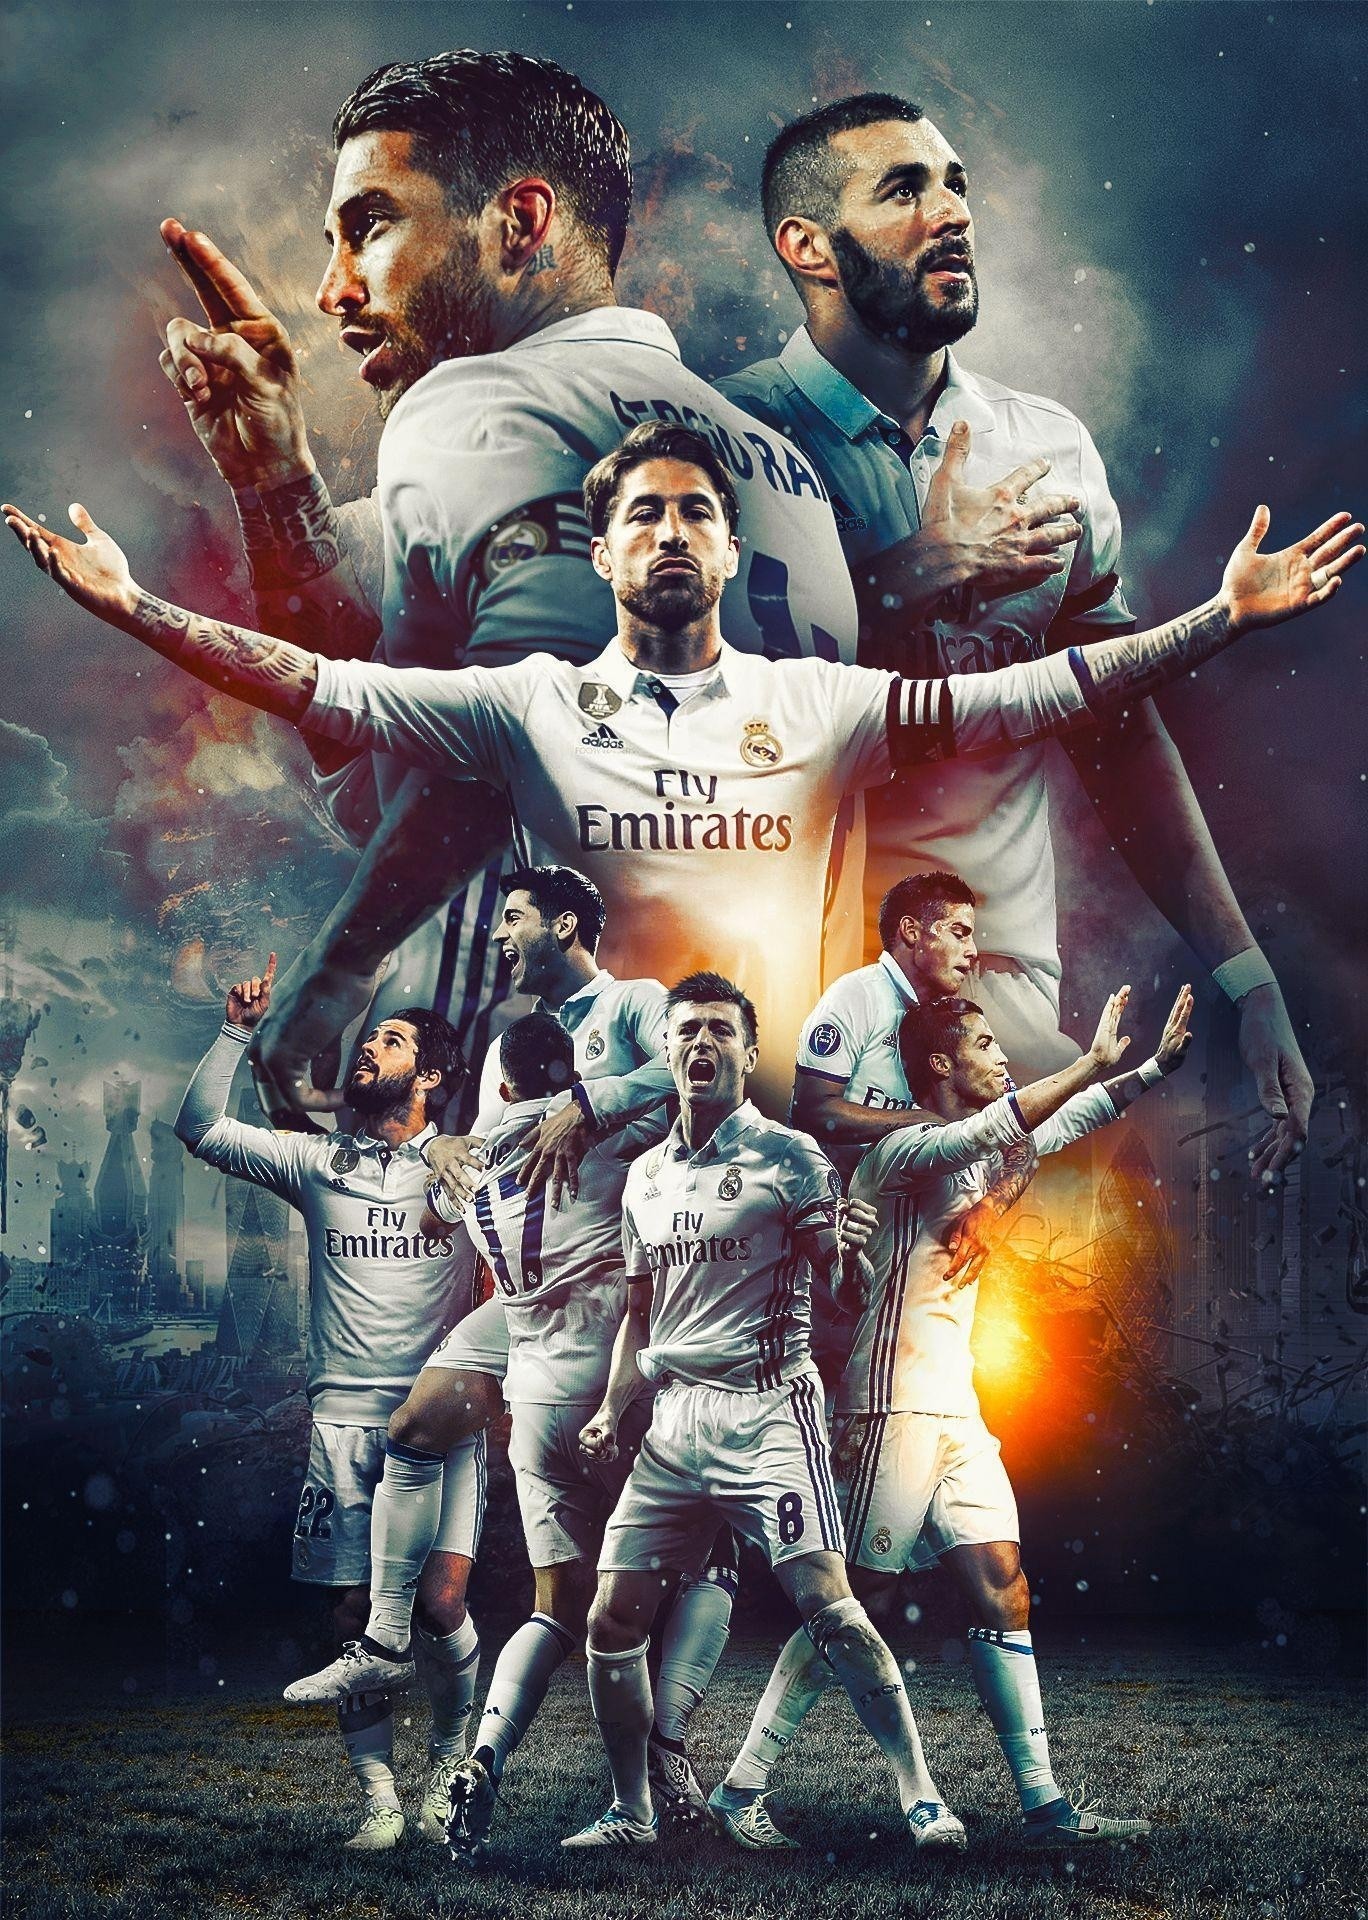 [22+] Real Madrid Wallpaper Full HD 2017 on WallpaperSafari